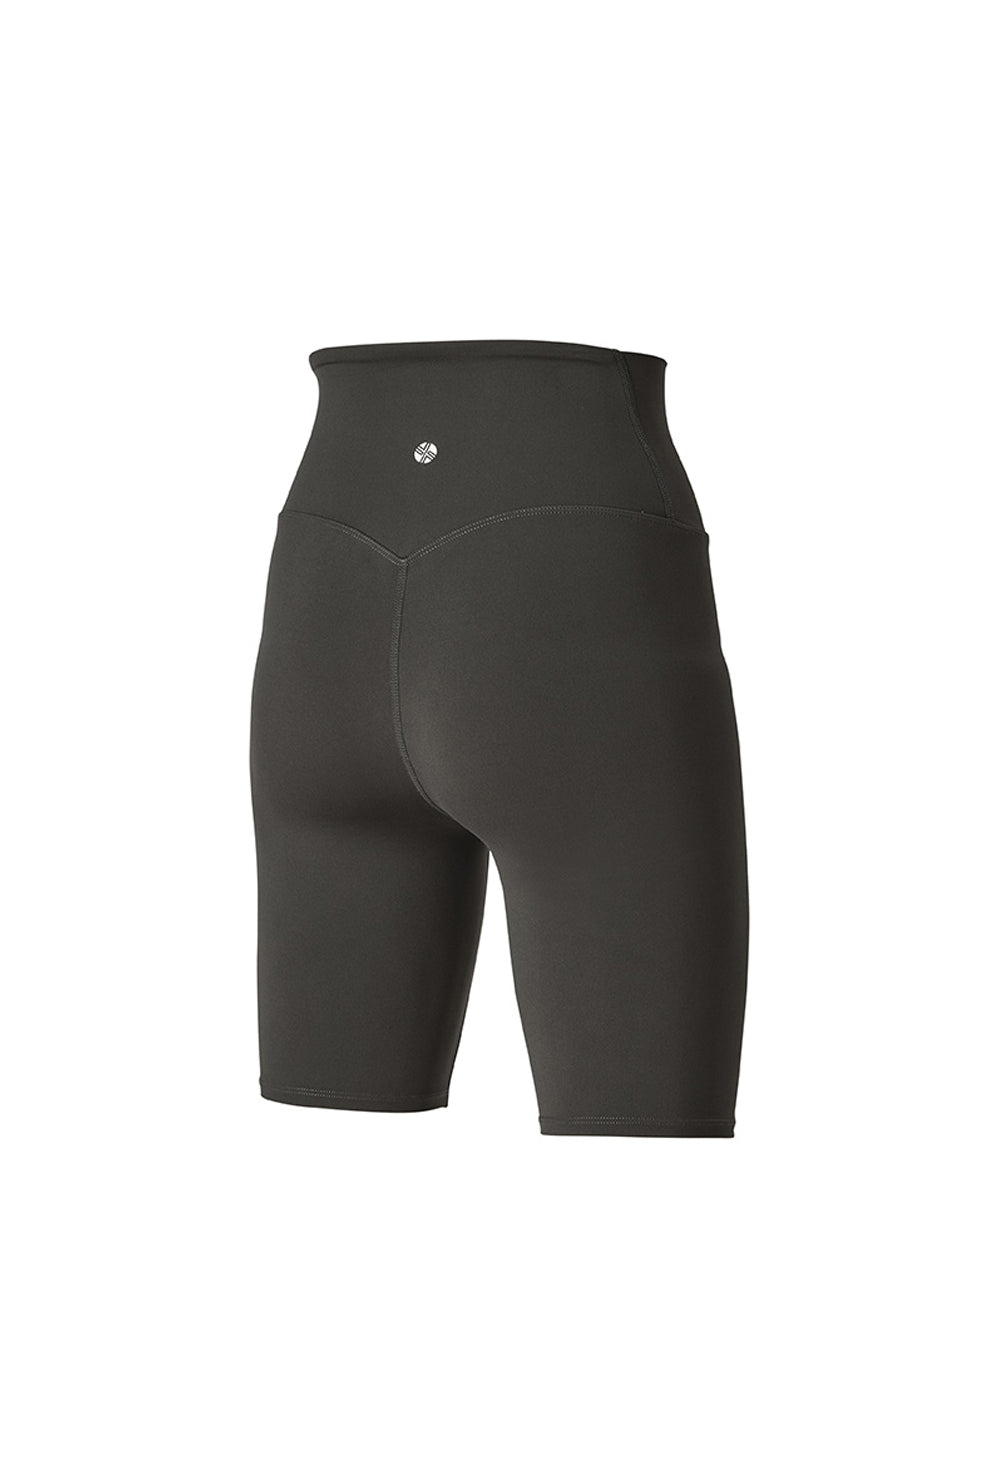 Black Label 360N Leggings 4.5 Shorts - Steel Charcoal